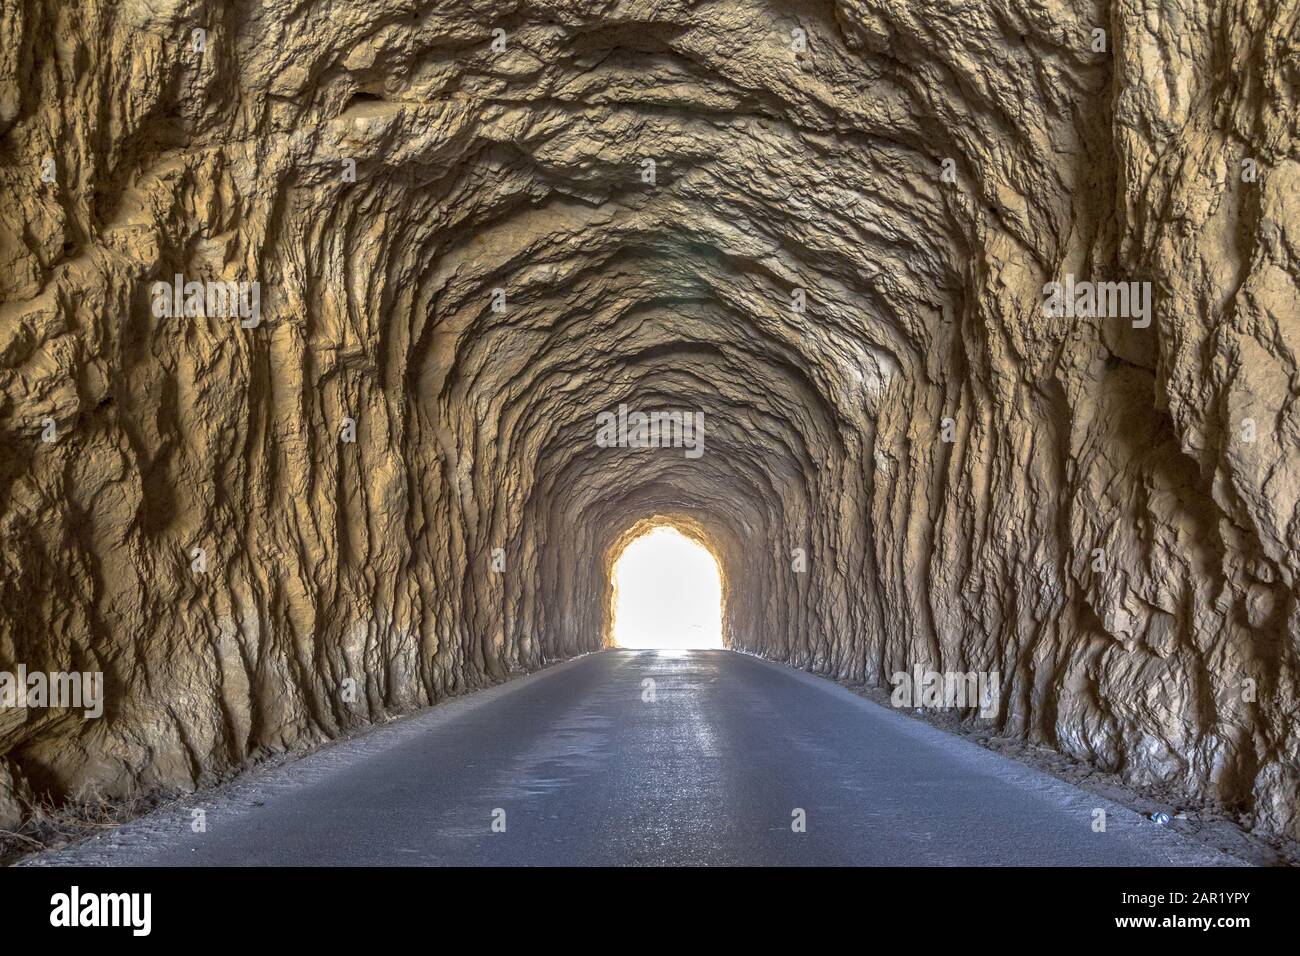 Helles Licht am Ende des Tunnels. Uralter Tunnel mit rauhen Wänden. Stockfoto